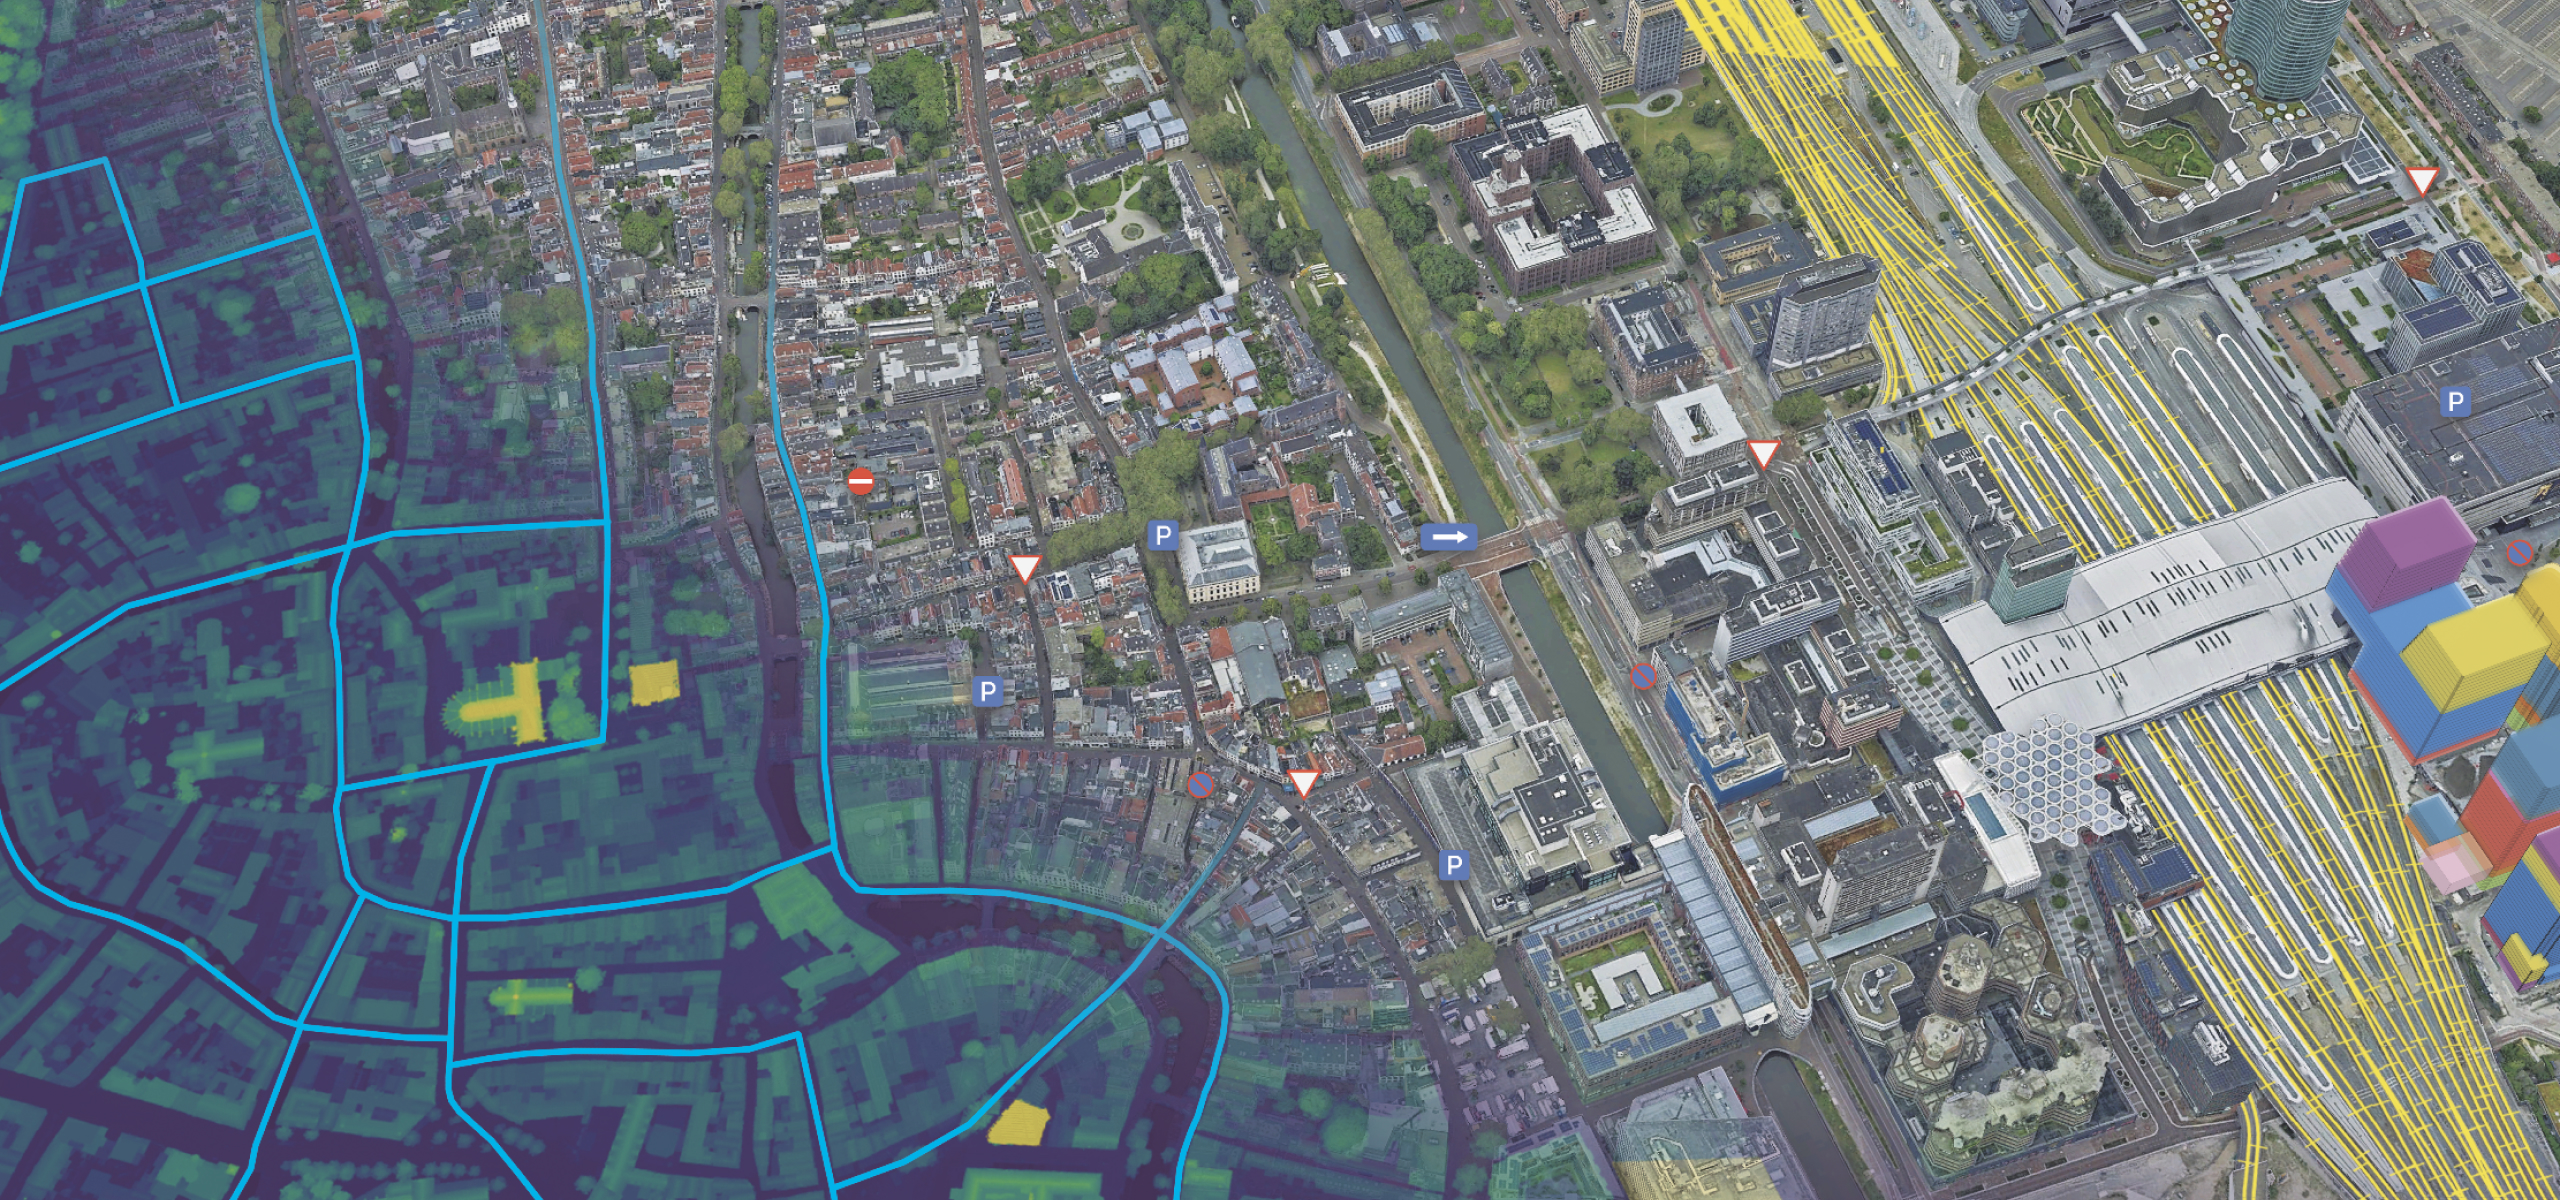 Maillage 3D d’une ville représentant les bâtiments, les routes et les espaces verts superposés sur des couches de données souterraines et de rue 